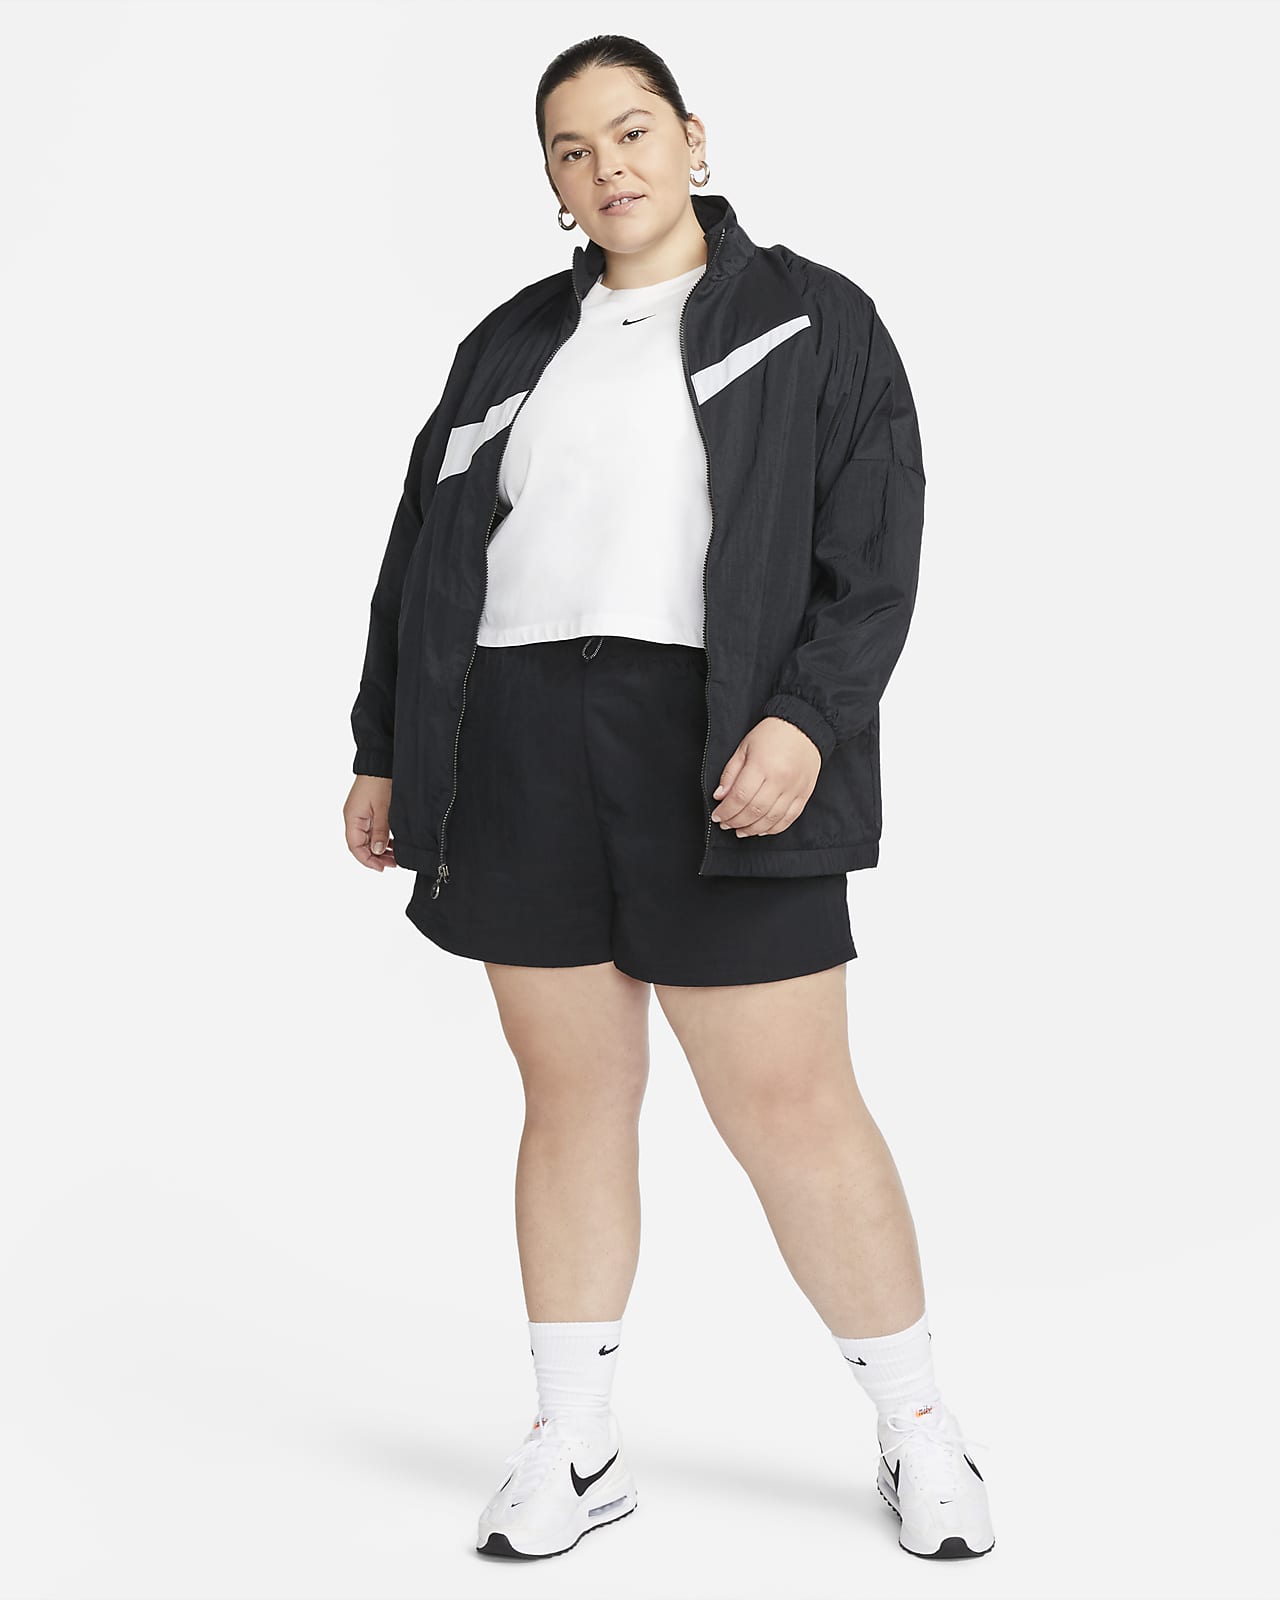 Subir y bajar Terraplén puente Nike Sportswear Essential Women's Woven Jacket (Plus Size). Nike.com